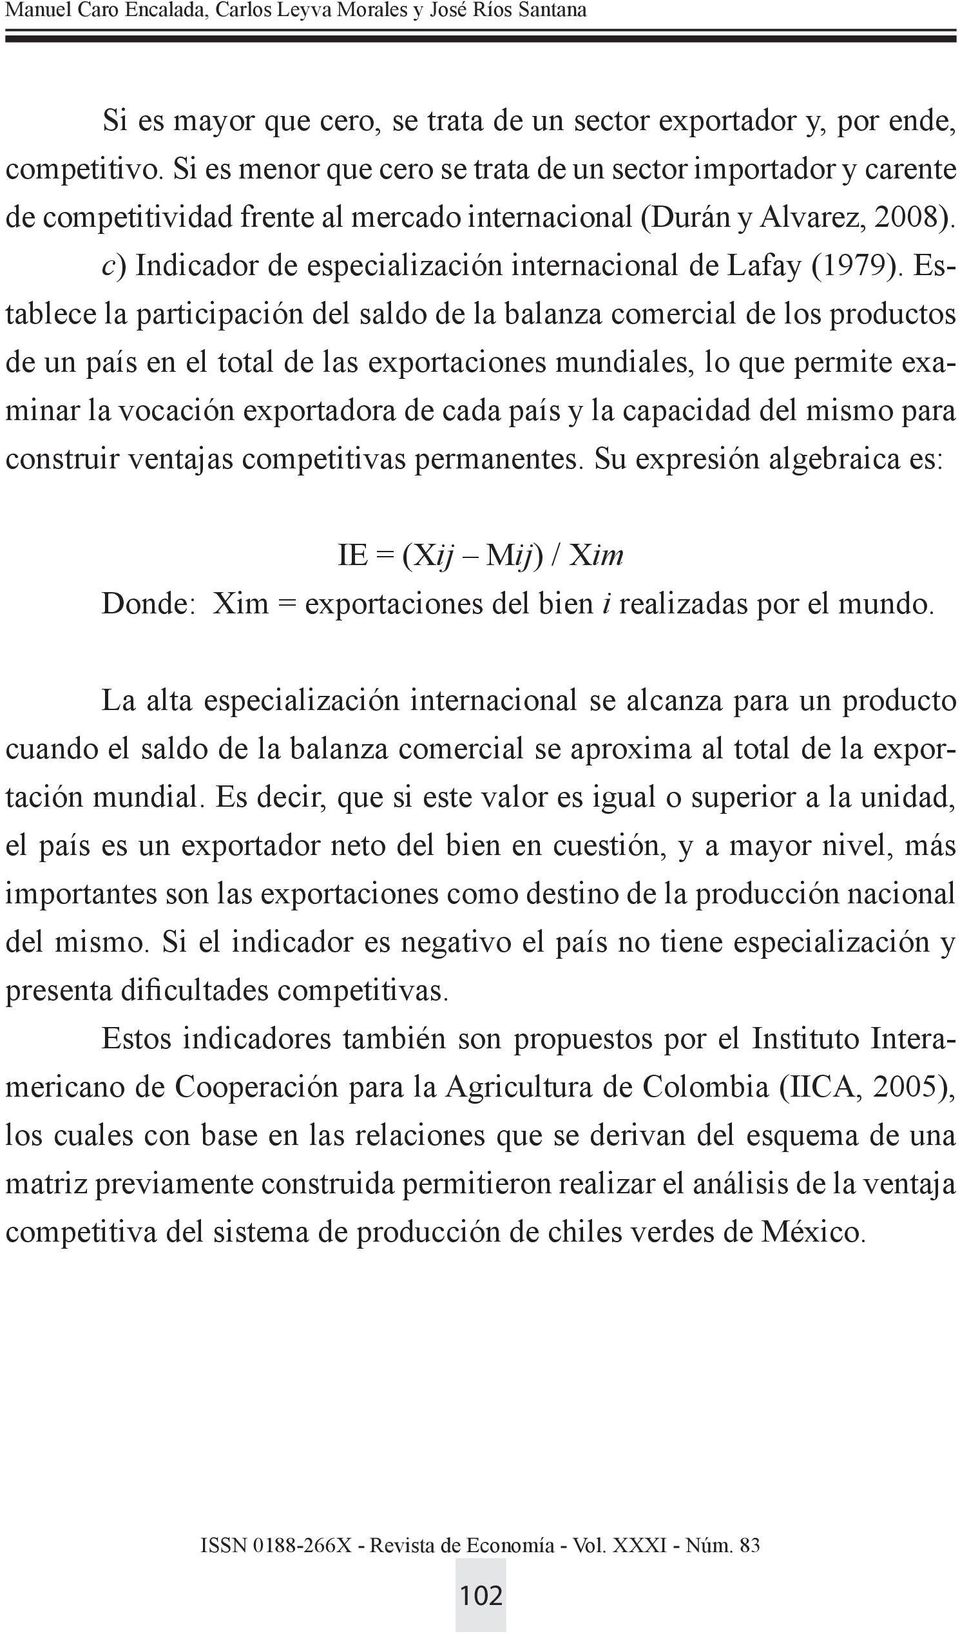 c) Indicador de especialización internacional de Lafay (1979).